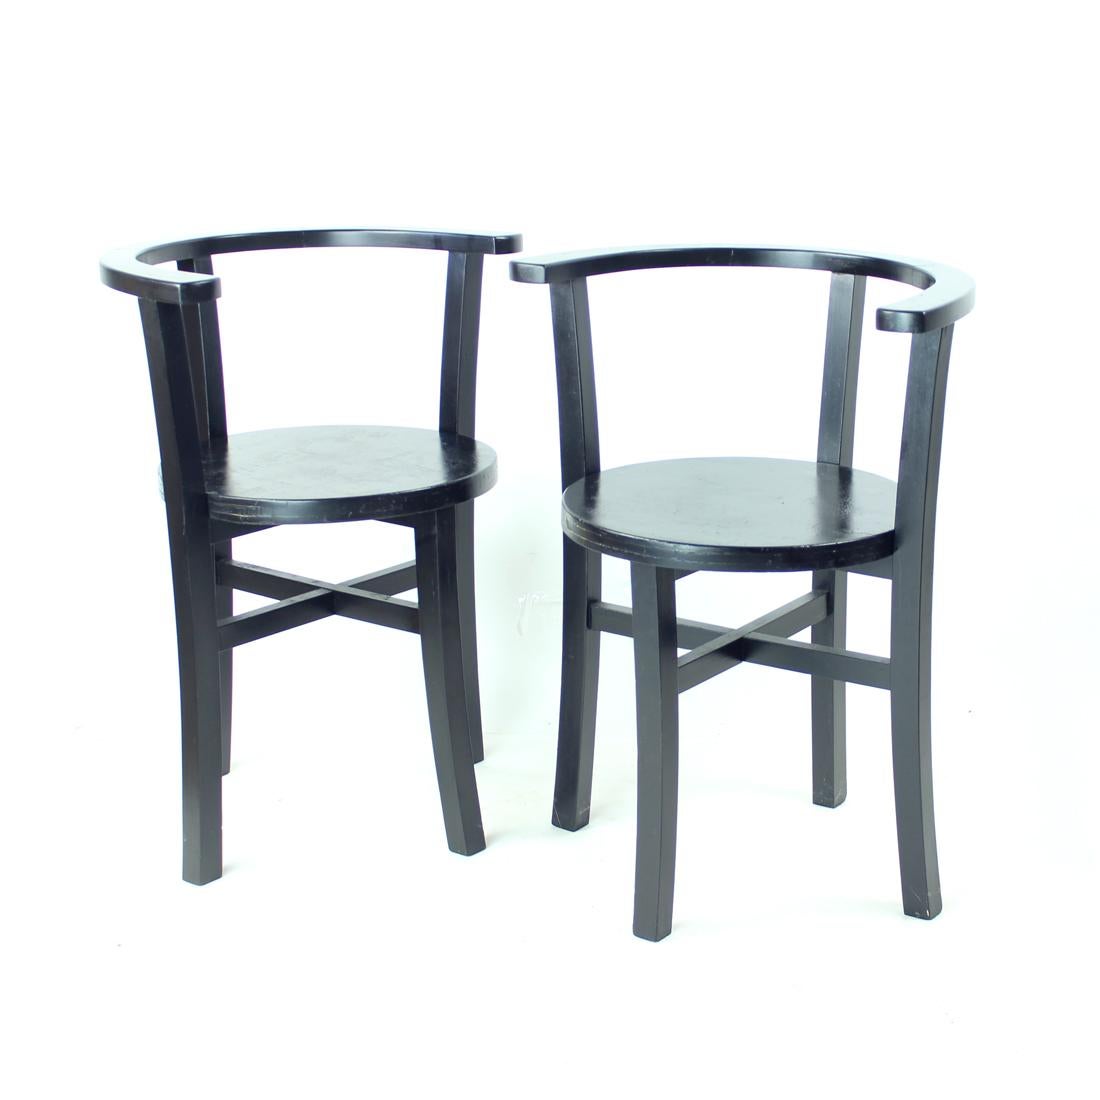 Magnifique ensemble de chaises de salle à manger produites en Tchécoslovaquie dans les années 1930, pendant l'entre-deux-guerres. Les chaises ont été entièrement restaurées. Fabriqué à l'origine en bois de chêne avec un beau design. Chaque chaise a